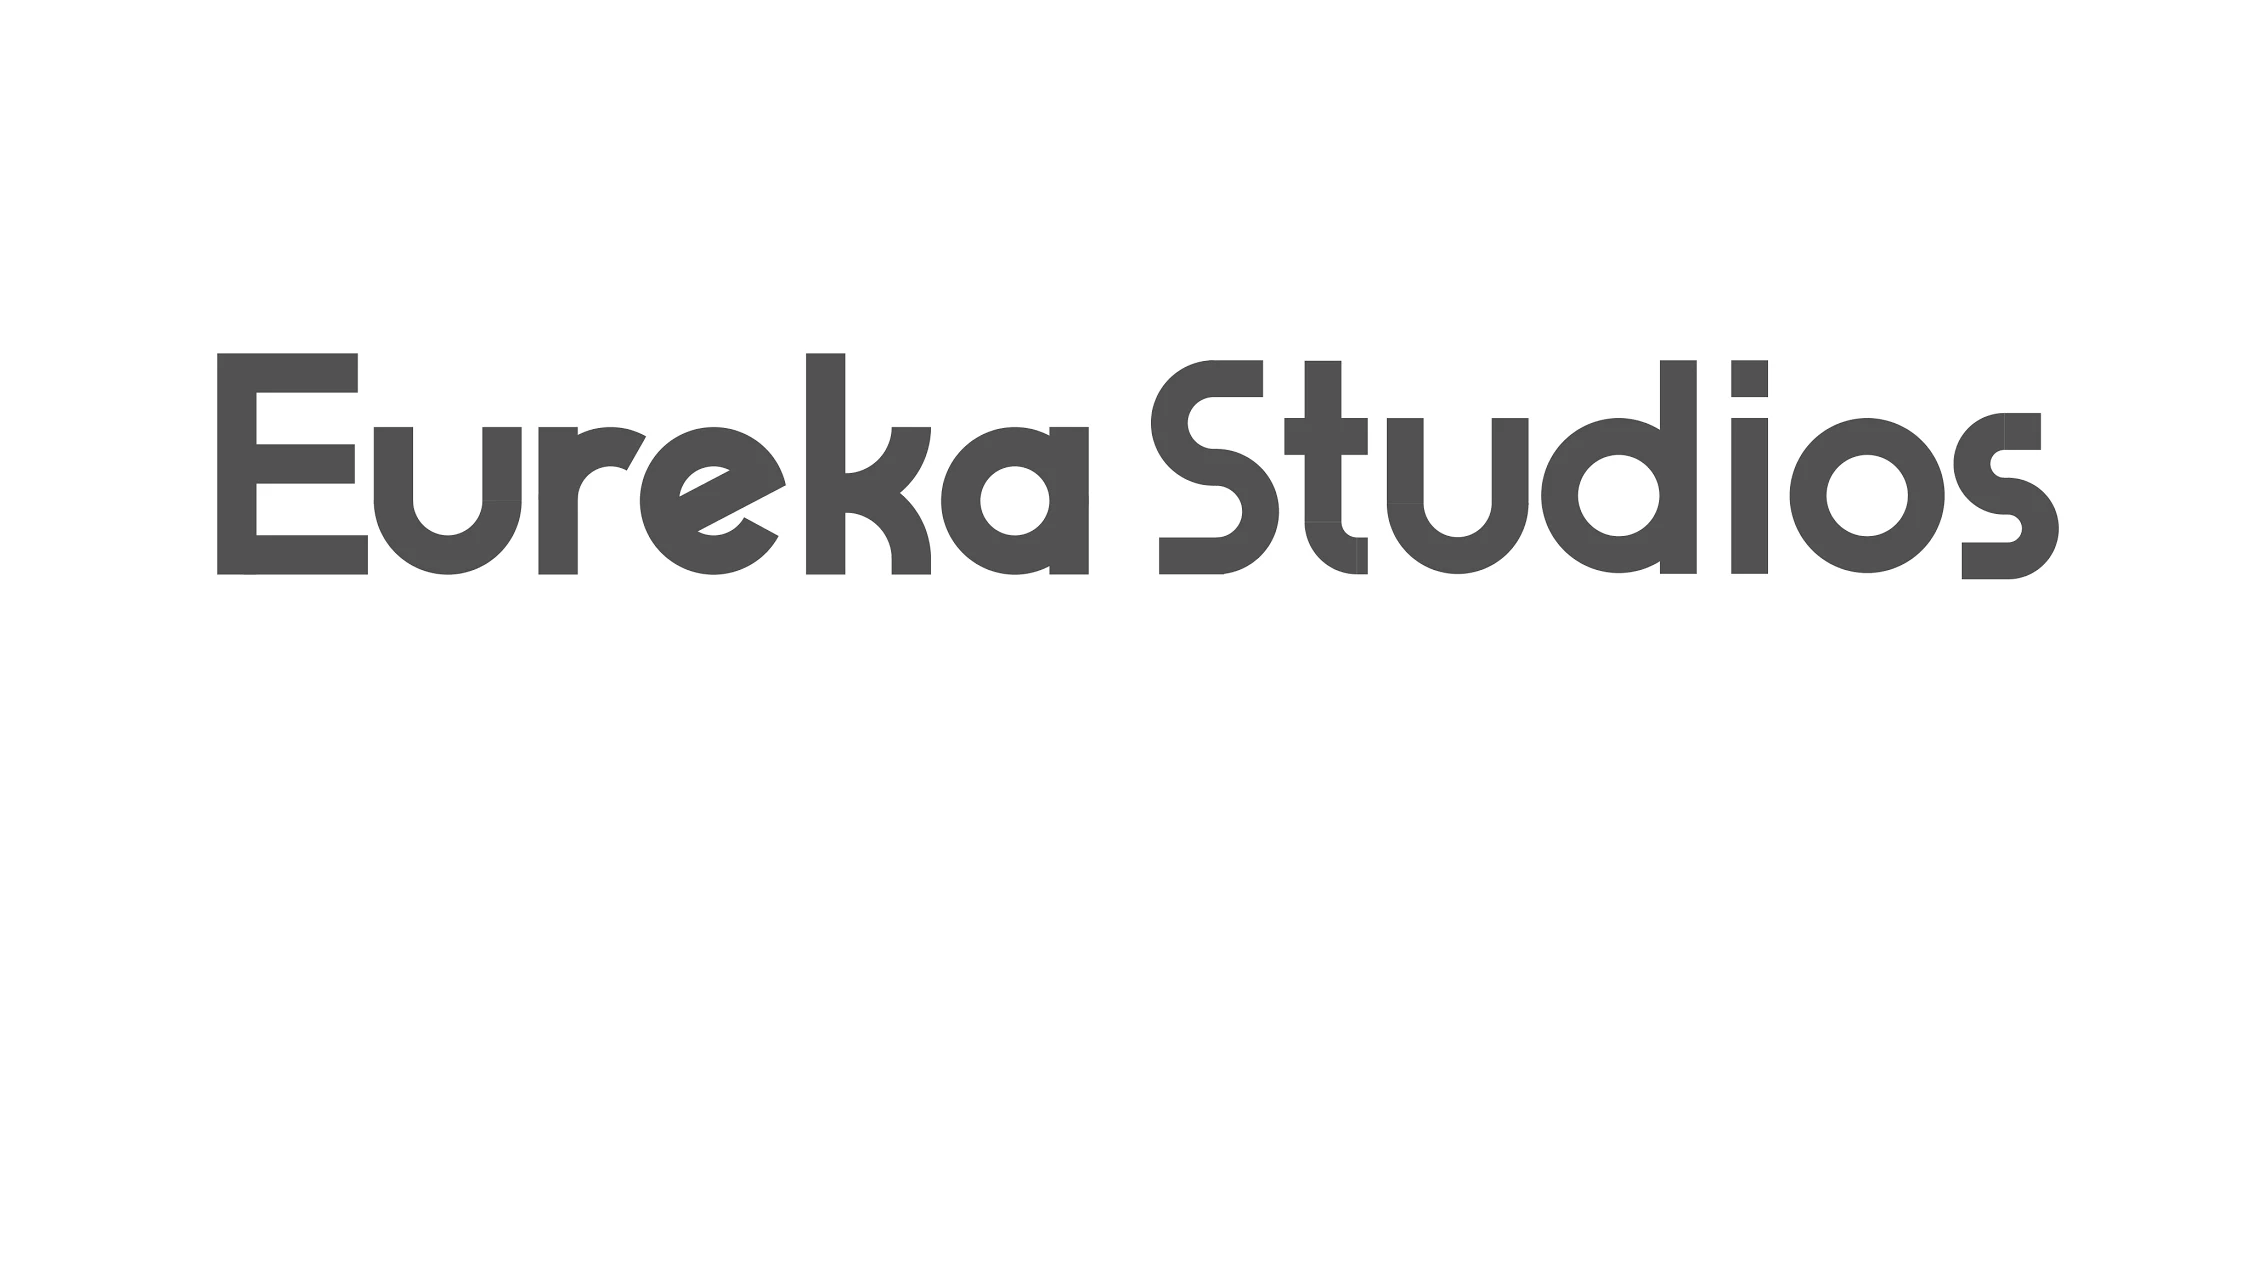 Eureka Studios